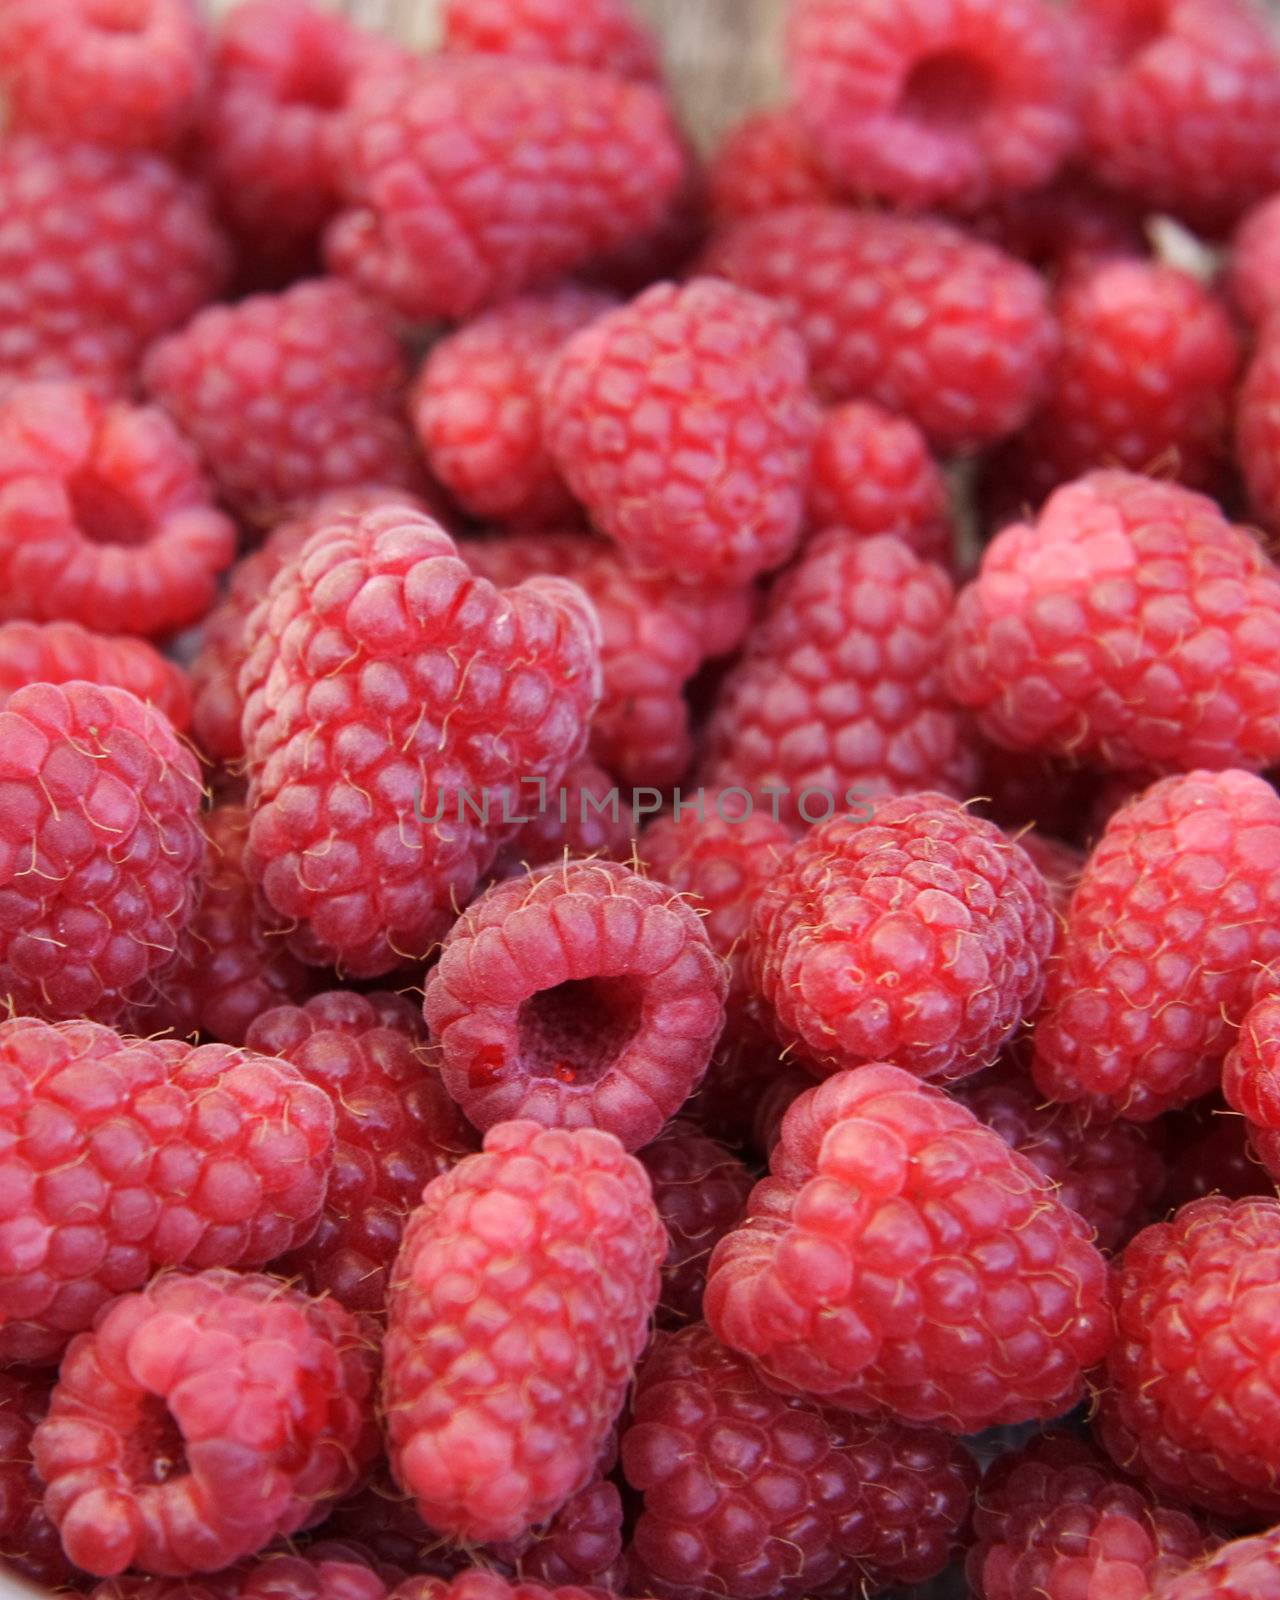 closeup detail of fresh raspberries freshly picked